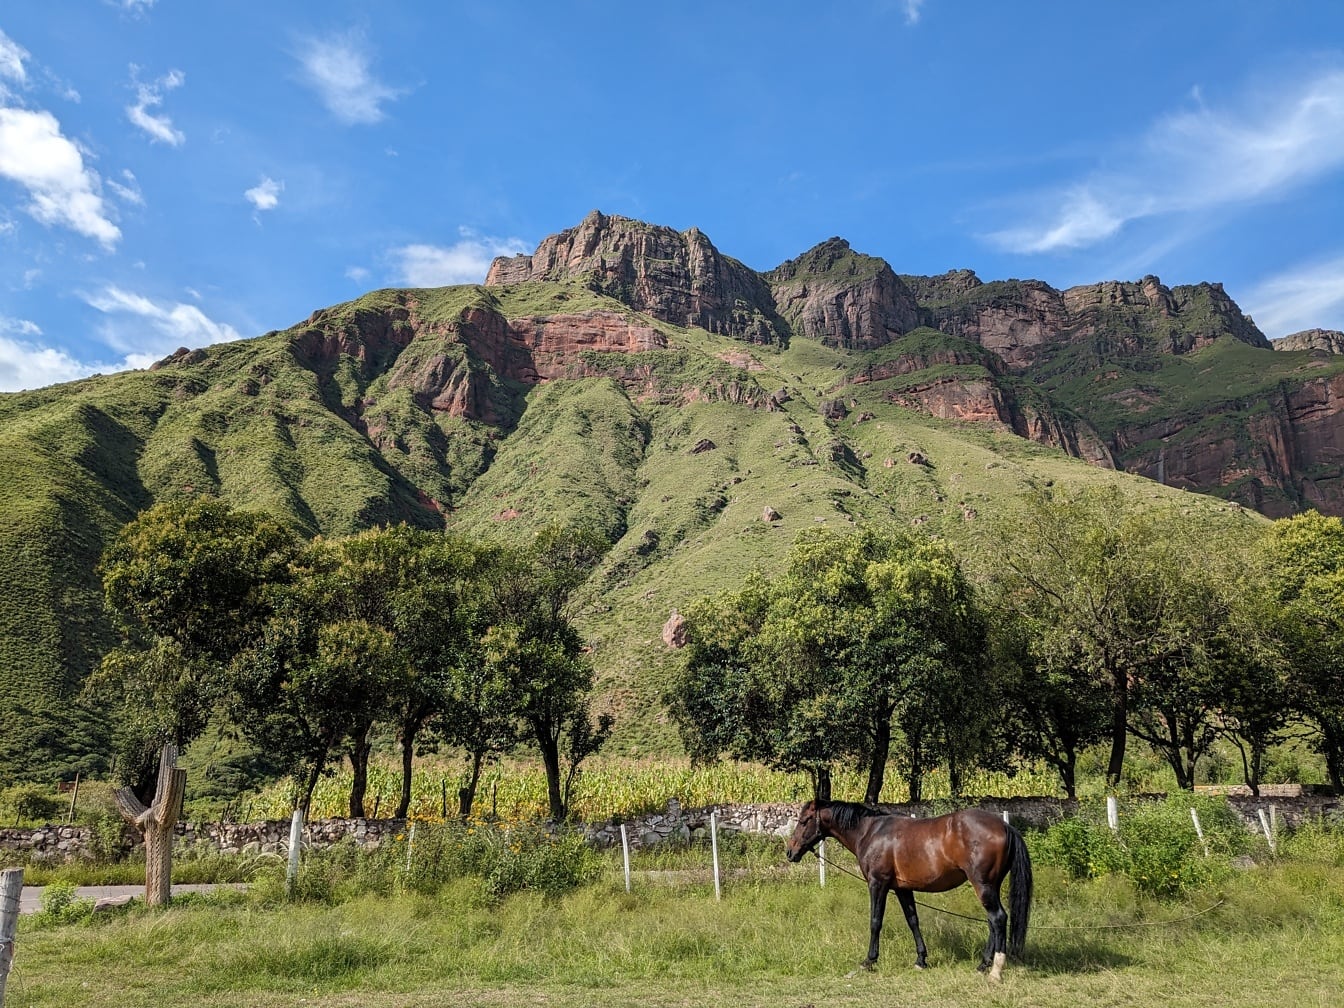 Cavallo di razza Criollo in piedi in un campo con alberi in frutteto al ranch in Argentina